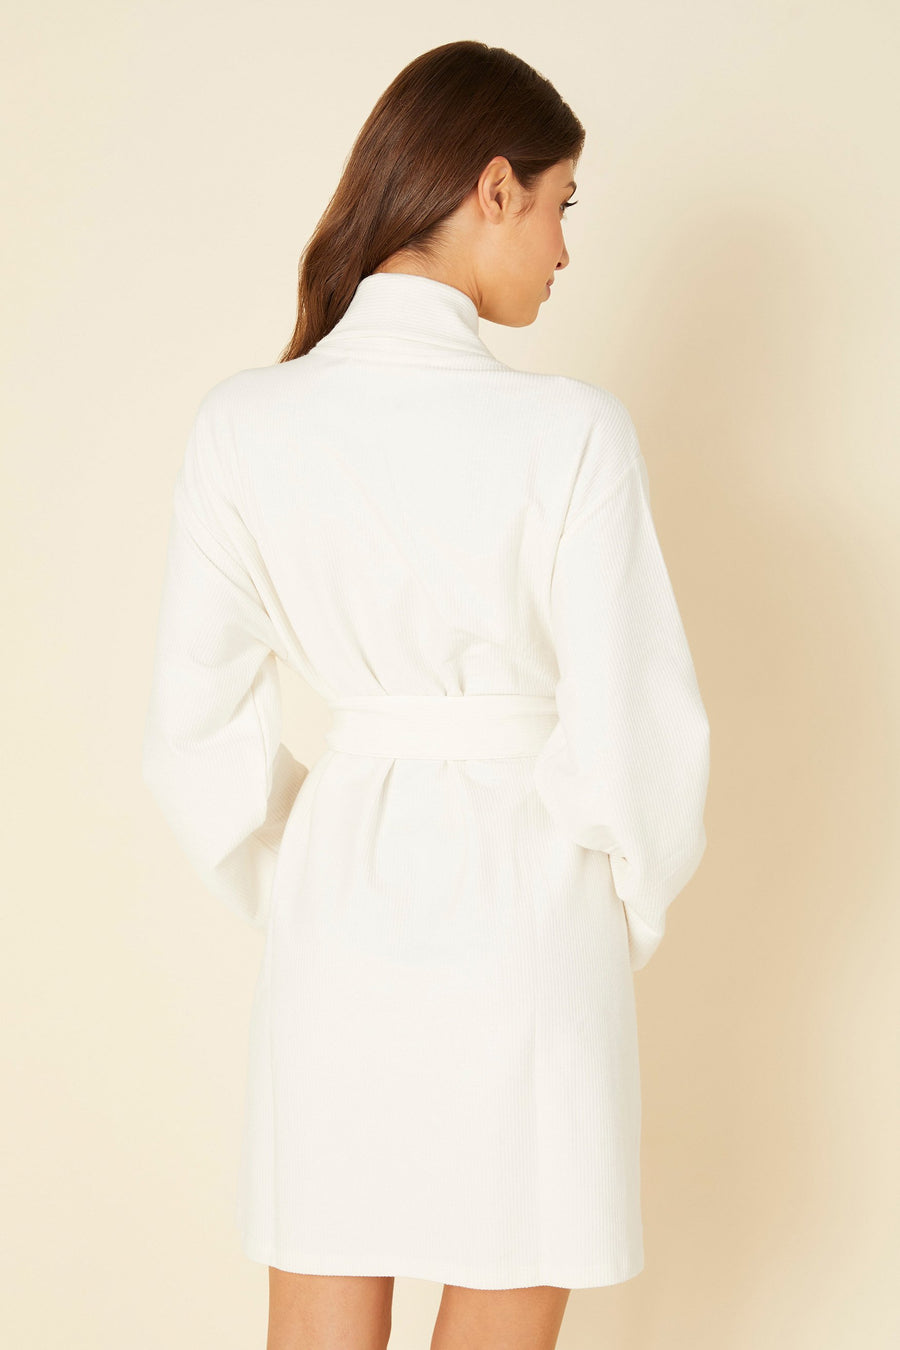 White Robe - Cozy Robe